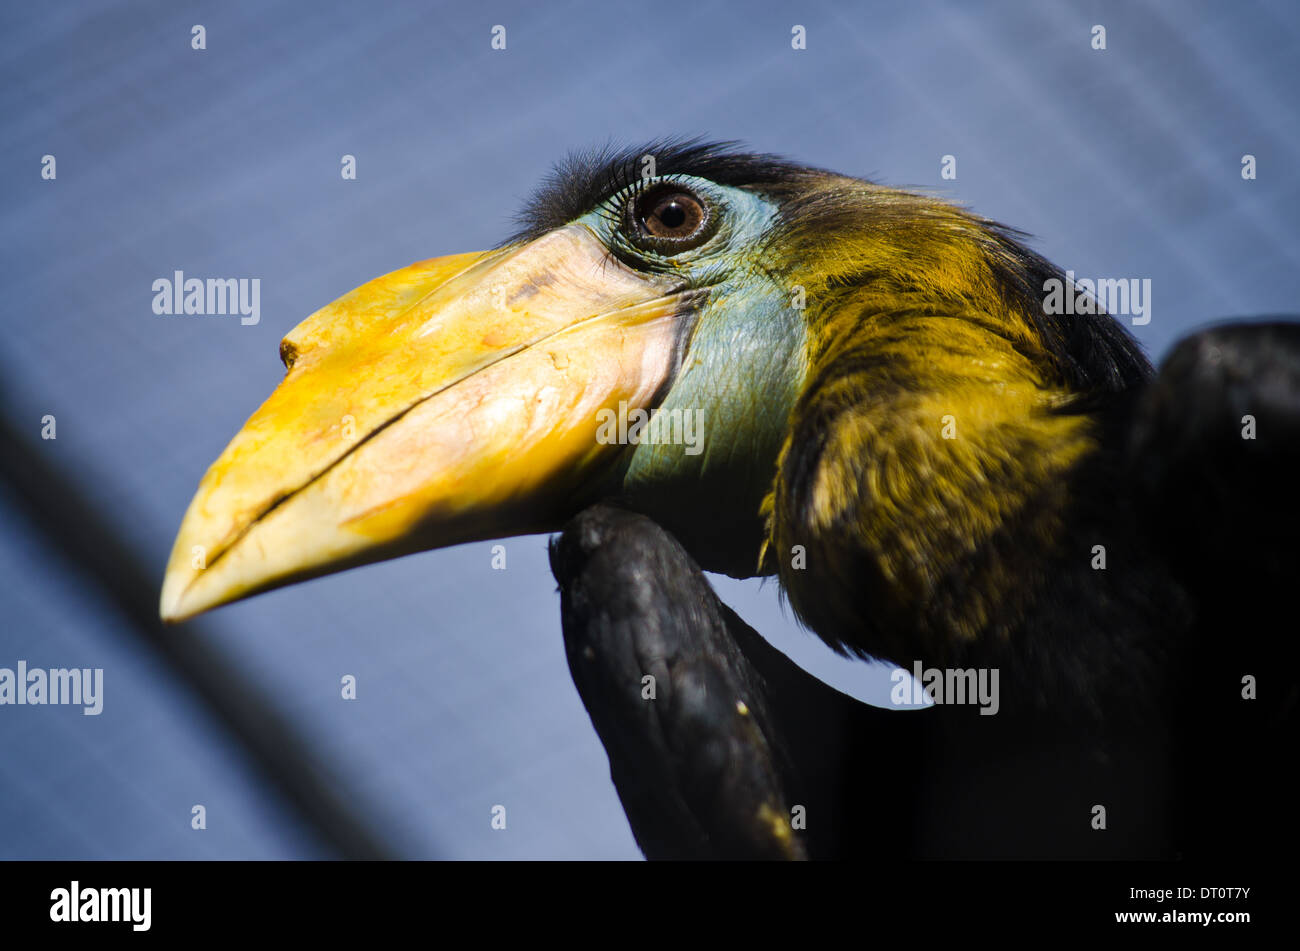 Hornbill bird with large yellow beak and long eyelashes Stock Photo